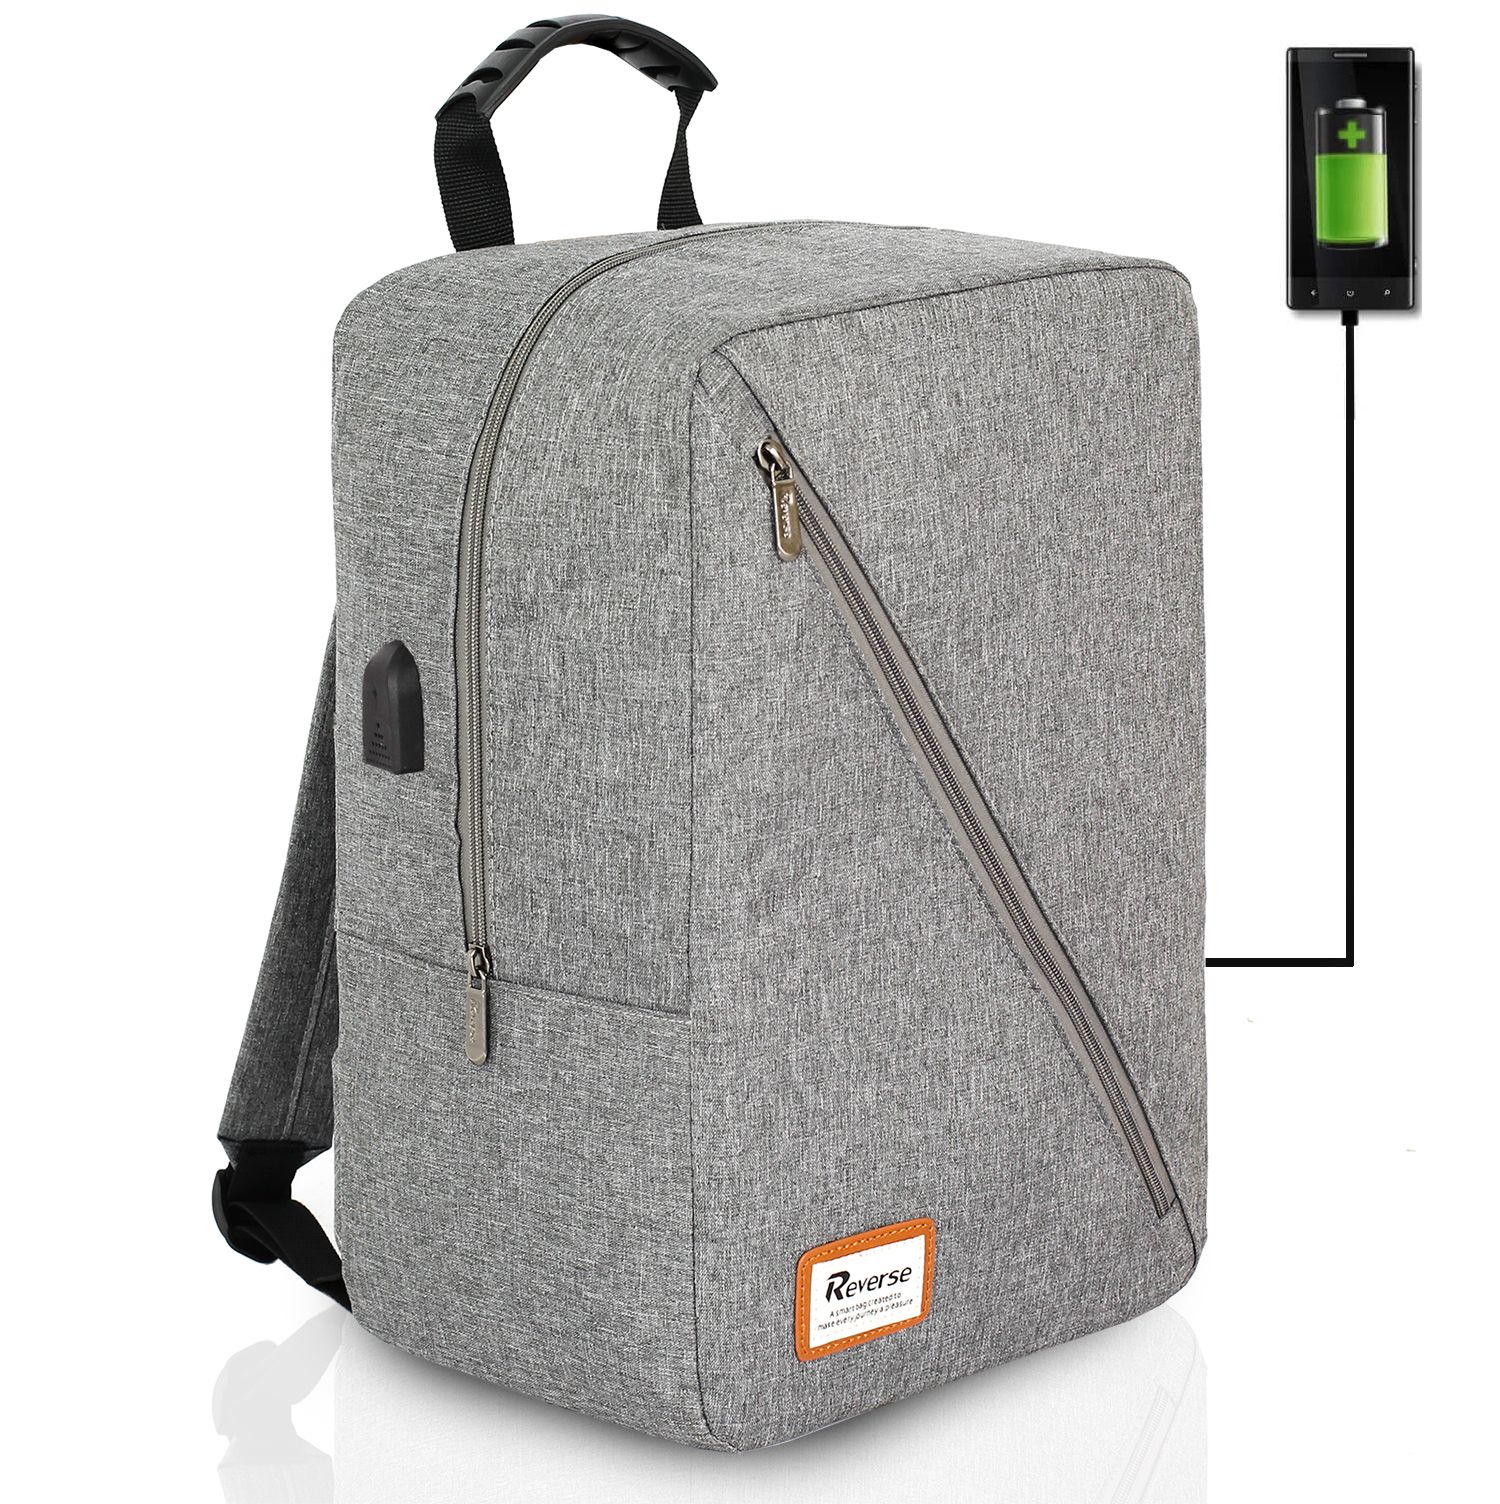 Reverse Příruční zavazadlo - batoh pro RYANAIR 1004 40x25x20 GREY- černý zip USB